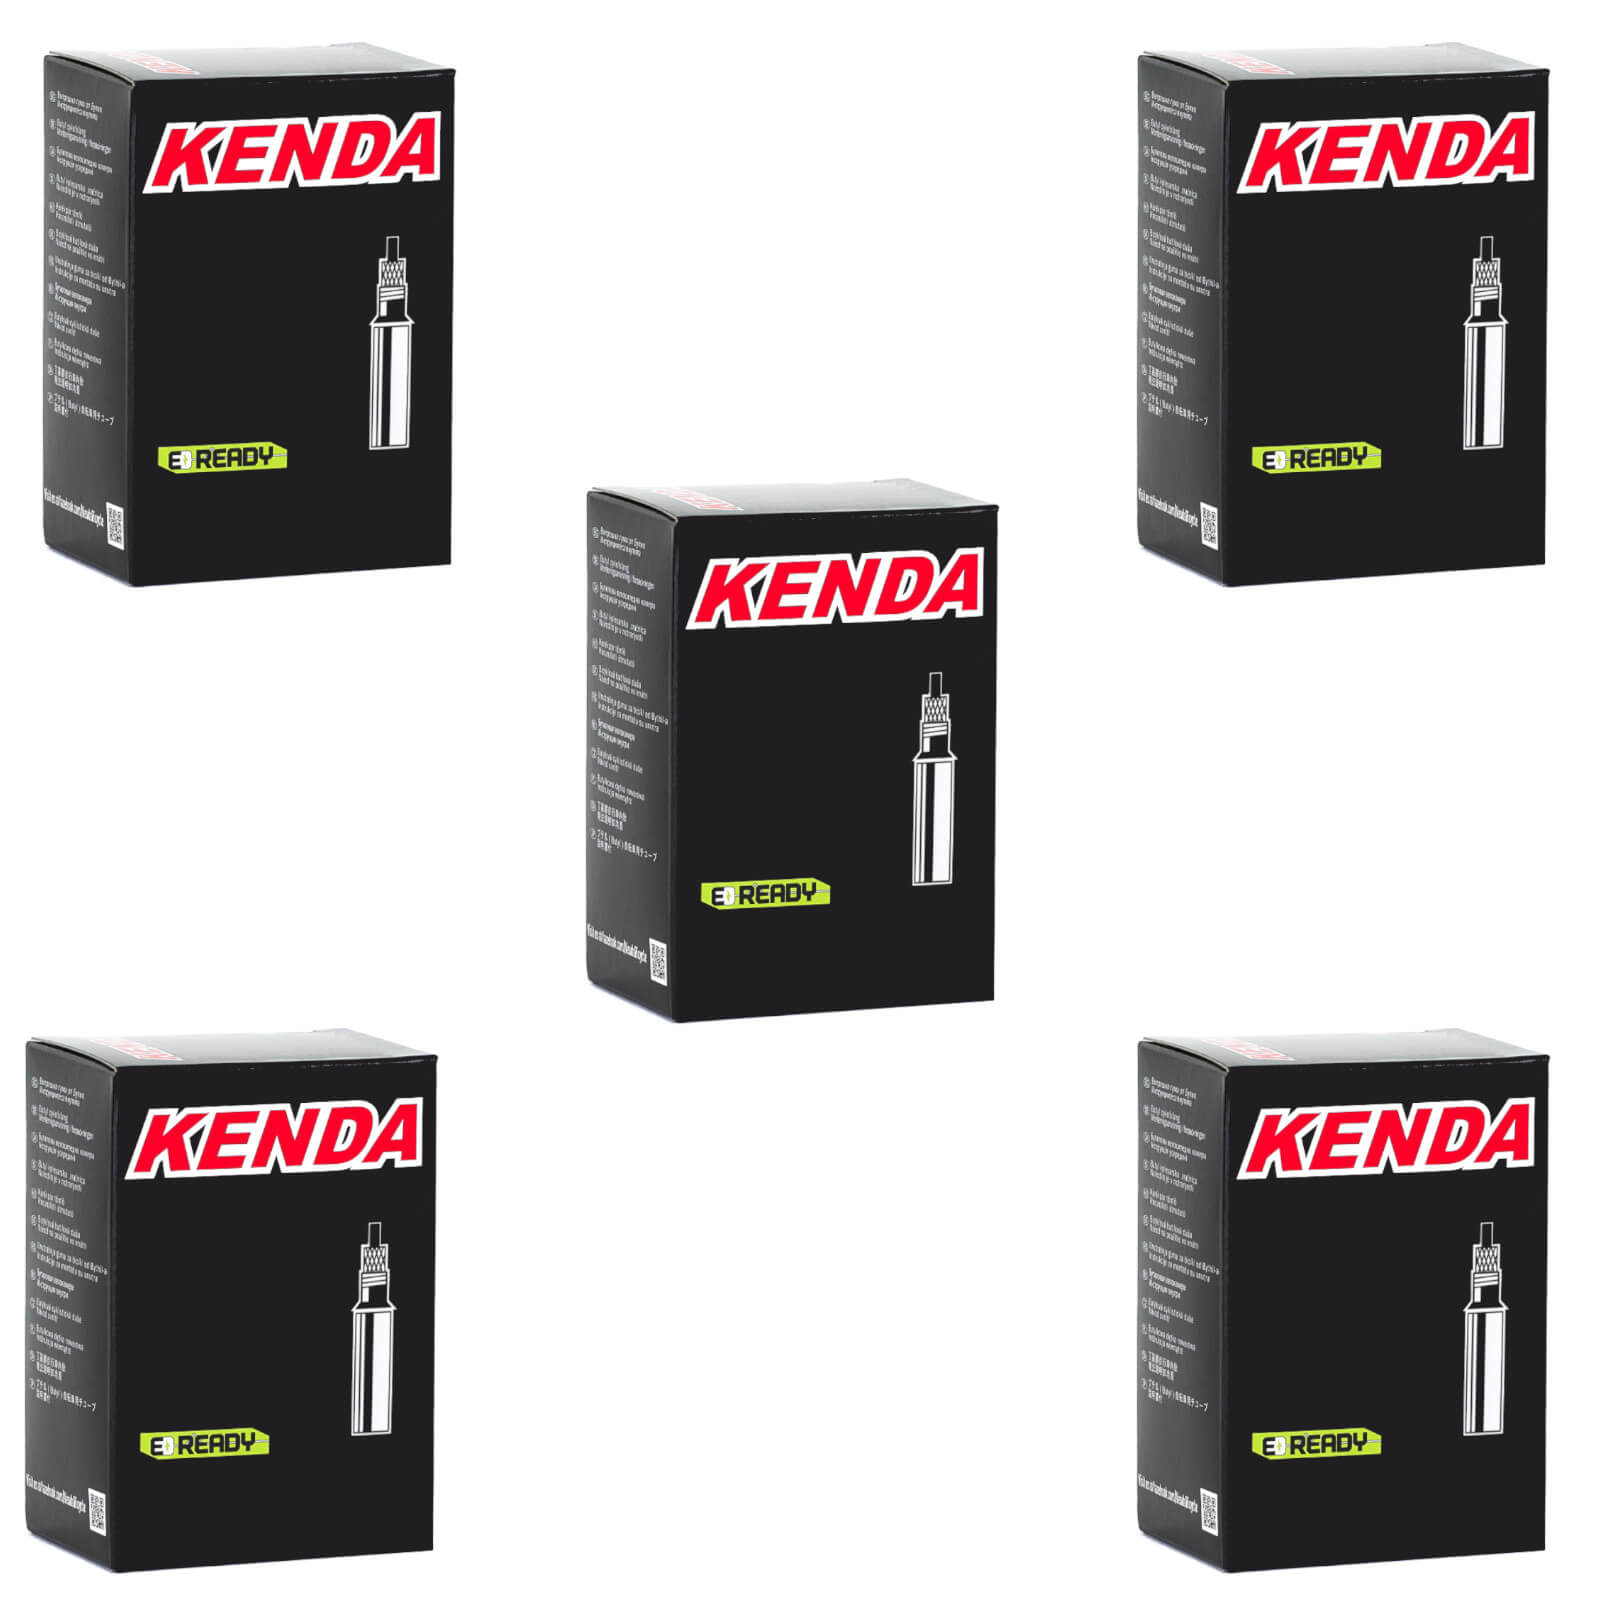 Kenda 700x28-35c 700c Presta Valve Bike Inner Tube Pack of 5